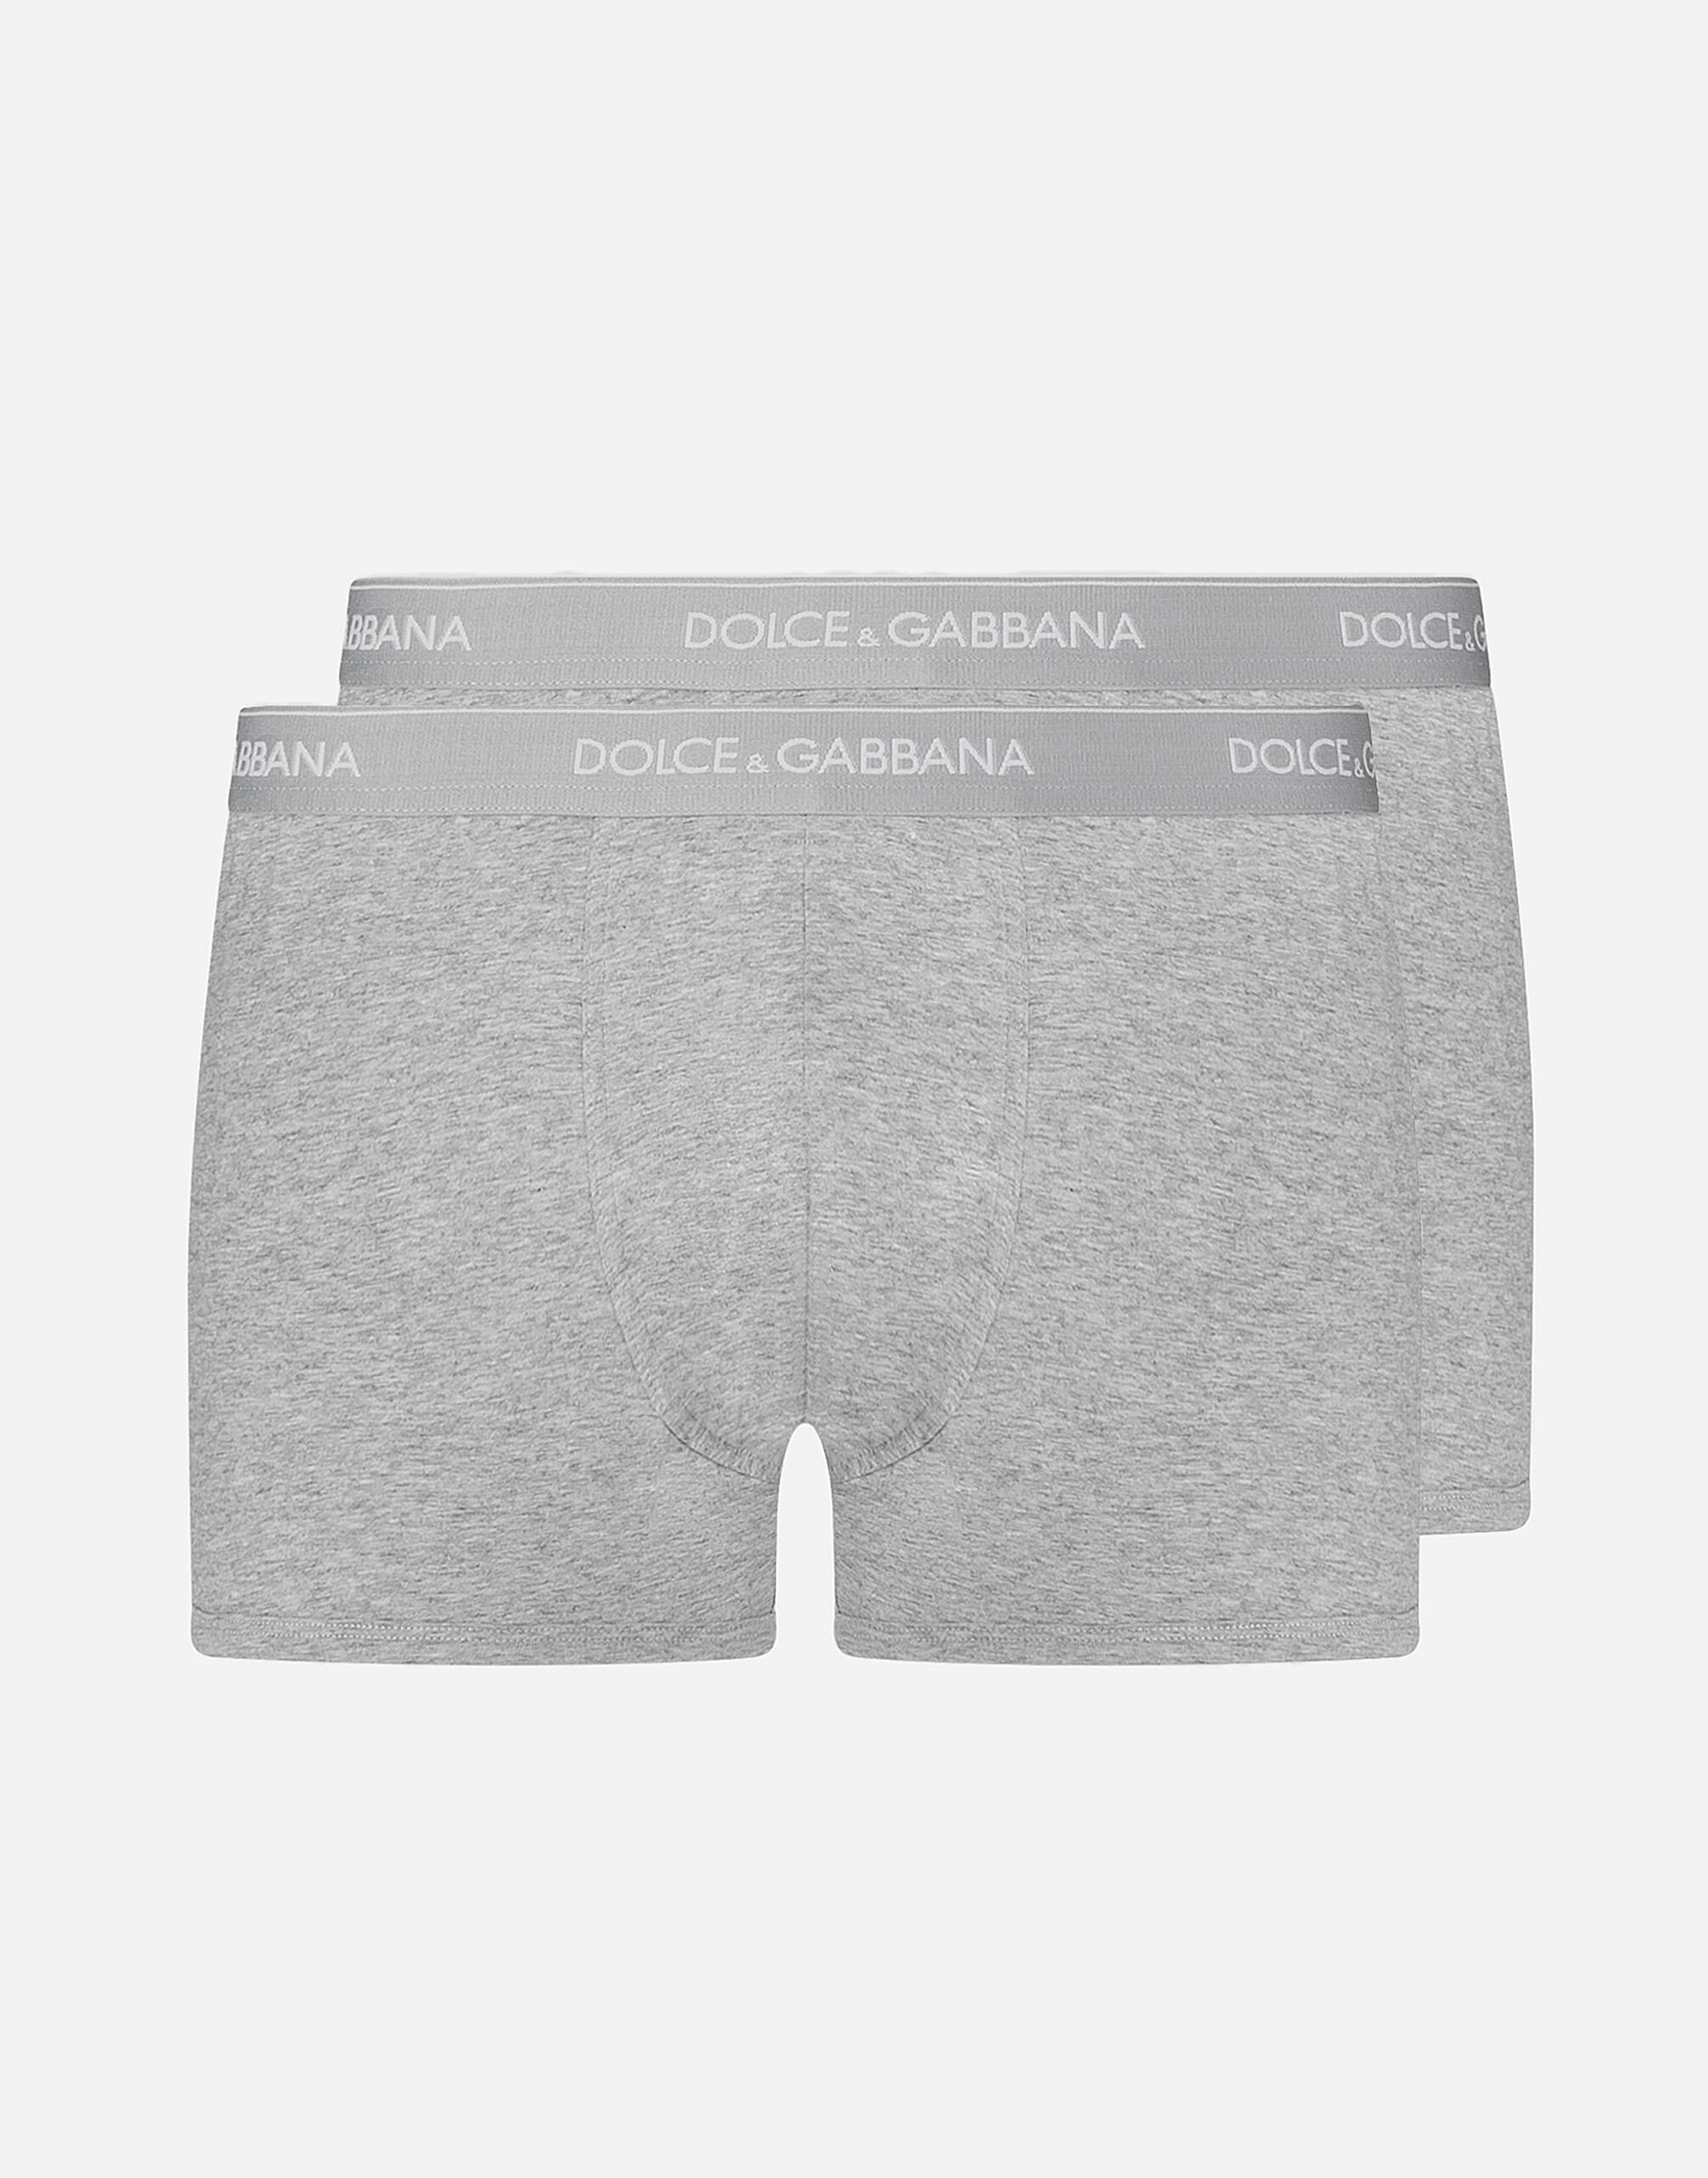 Dolce & Gabbana Underwear in Blue for Men